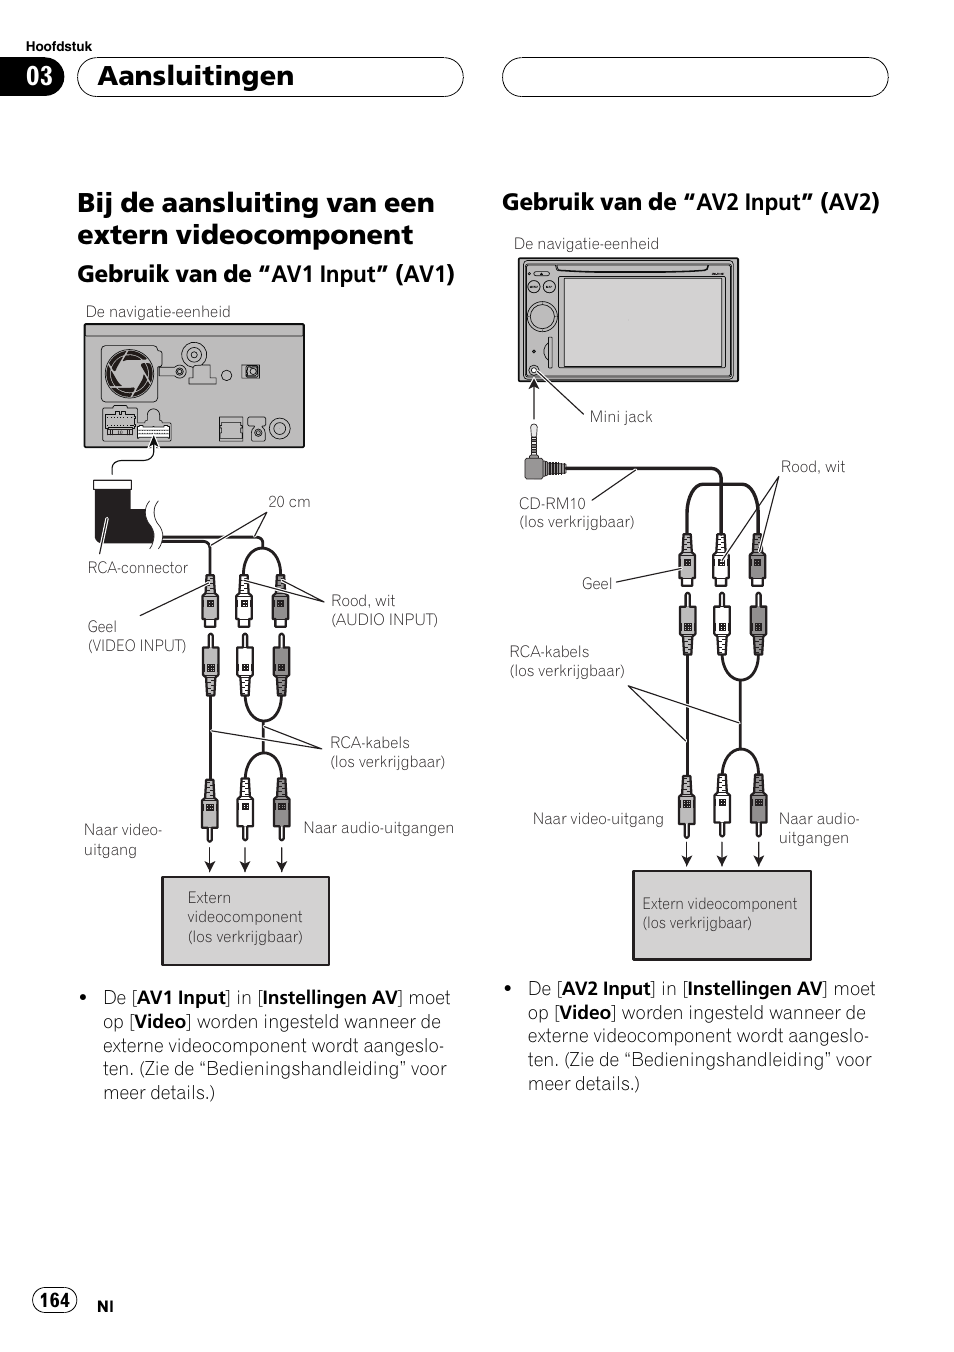 Bij de aansluiting van een extern, Videocomponent, Gebruik van de “av1